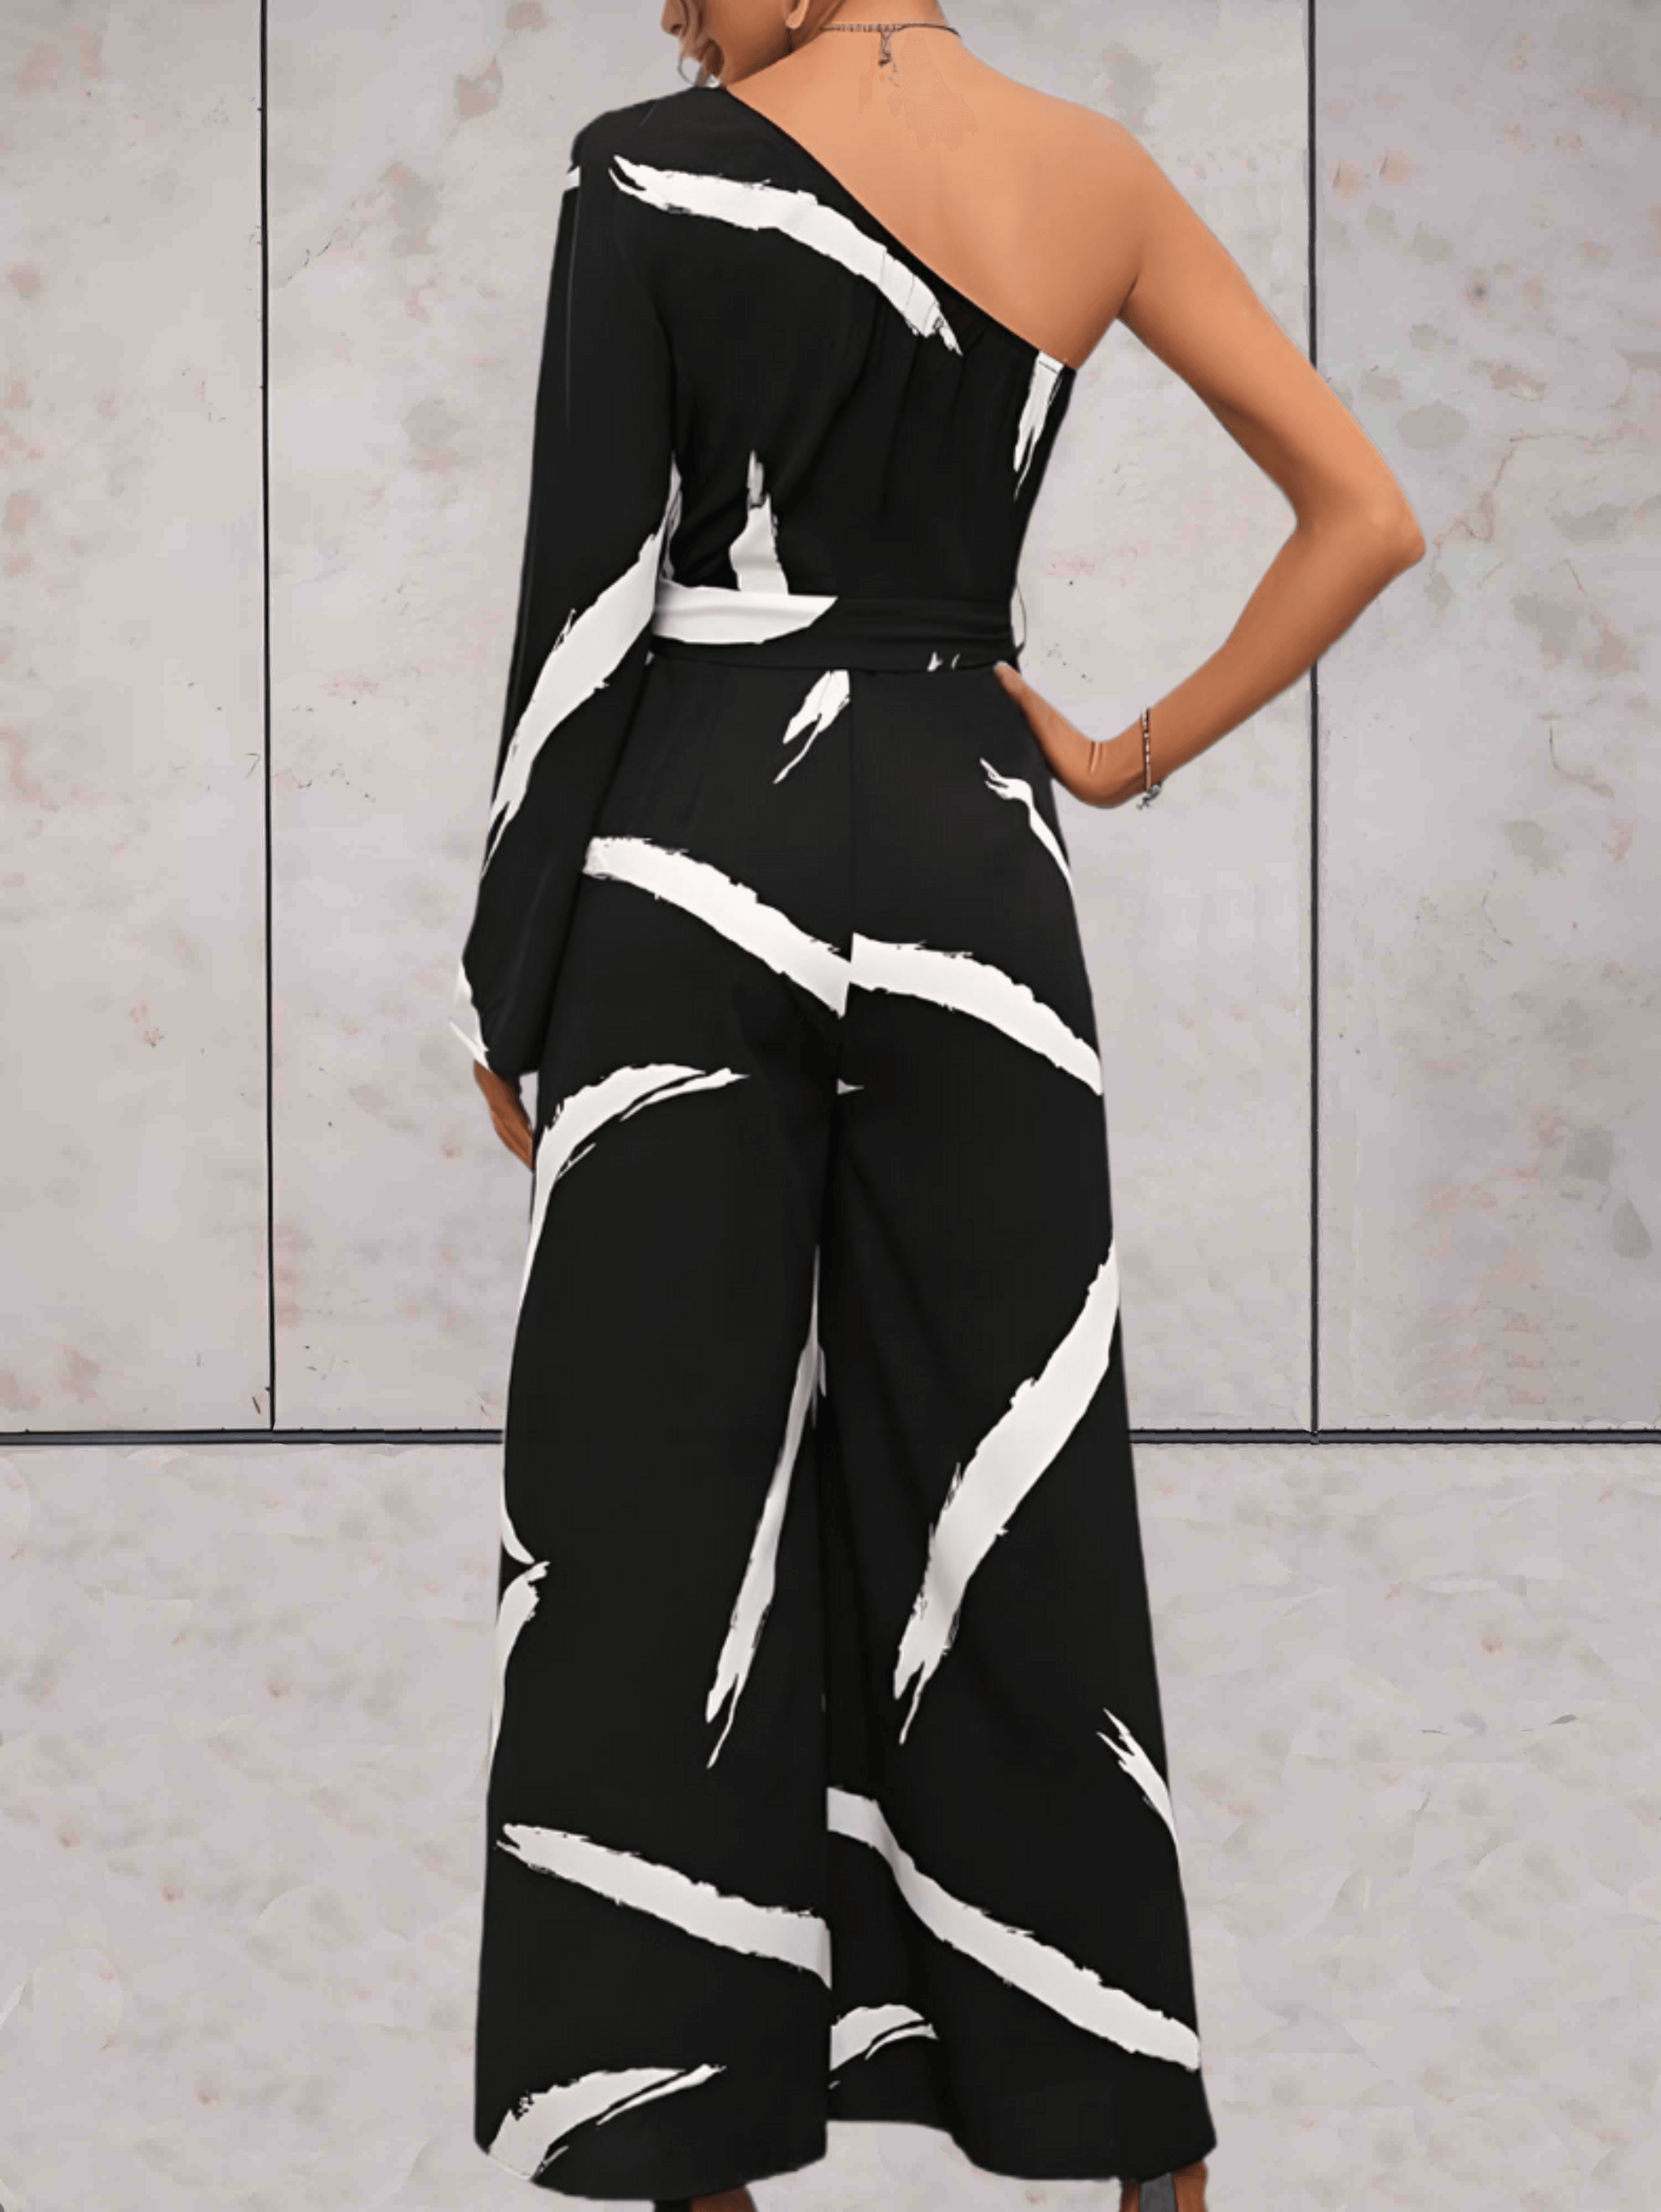 Bailey - Zwarte jumpsuit met witte verfstrepen, een off-shoulder ontwerp en een ontwerp met lange mouwen - Sky-Sense